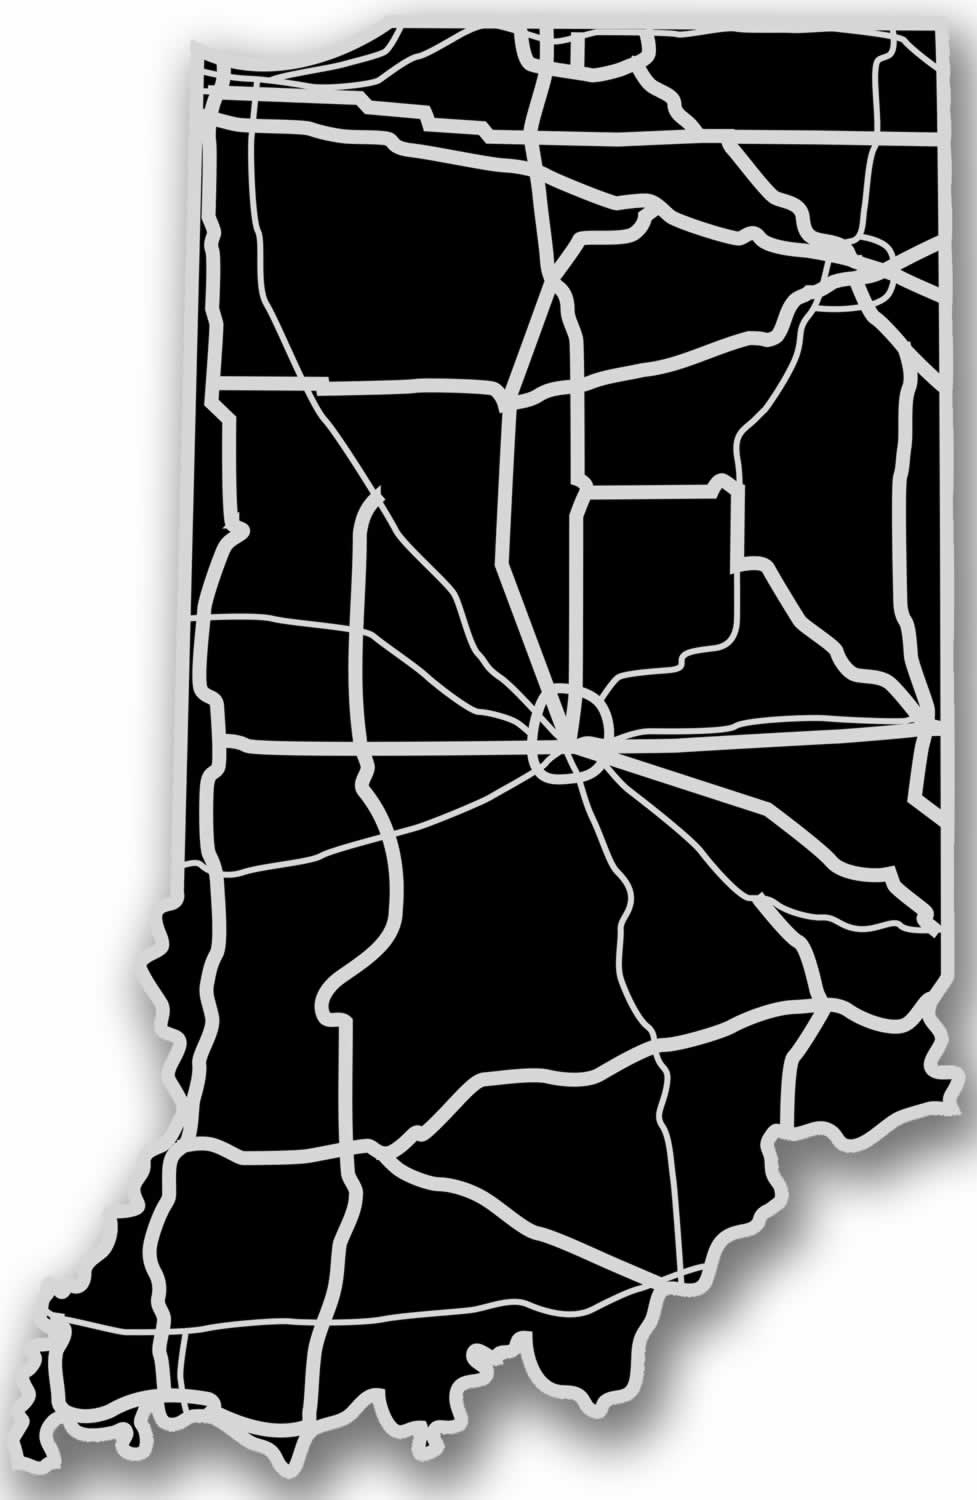 Indiana - Acrylic Cutout State Map - Black/Grey USA States Acrylic Art